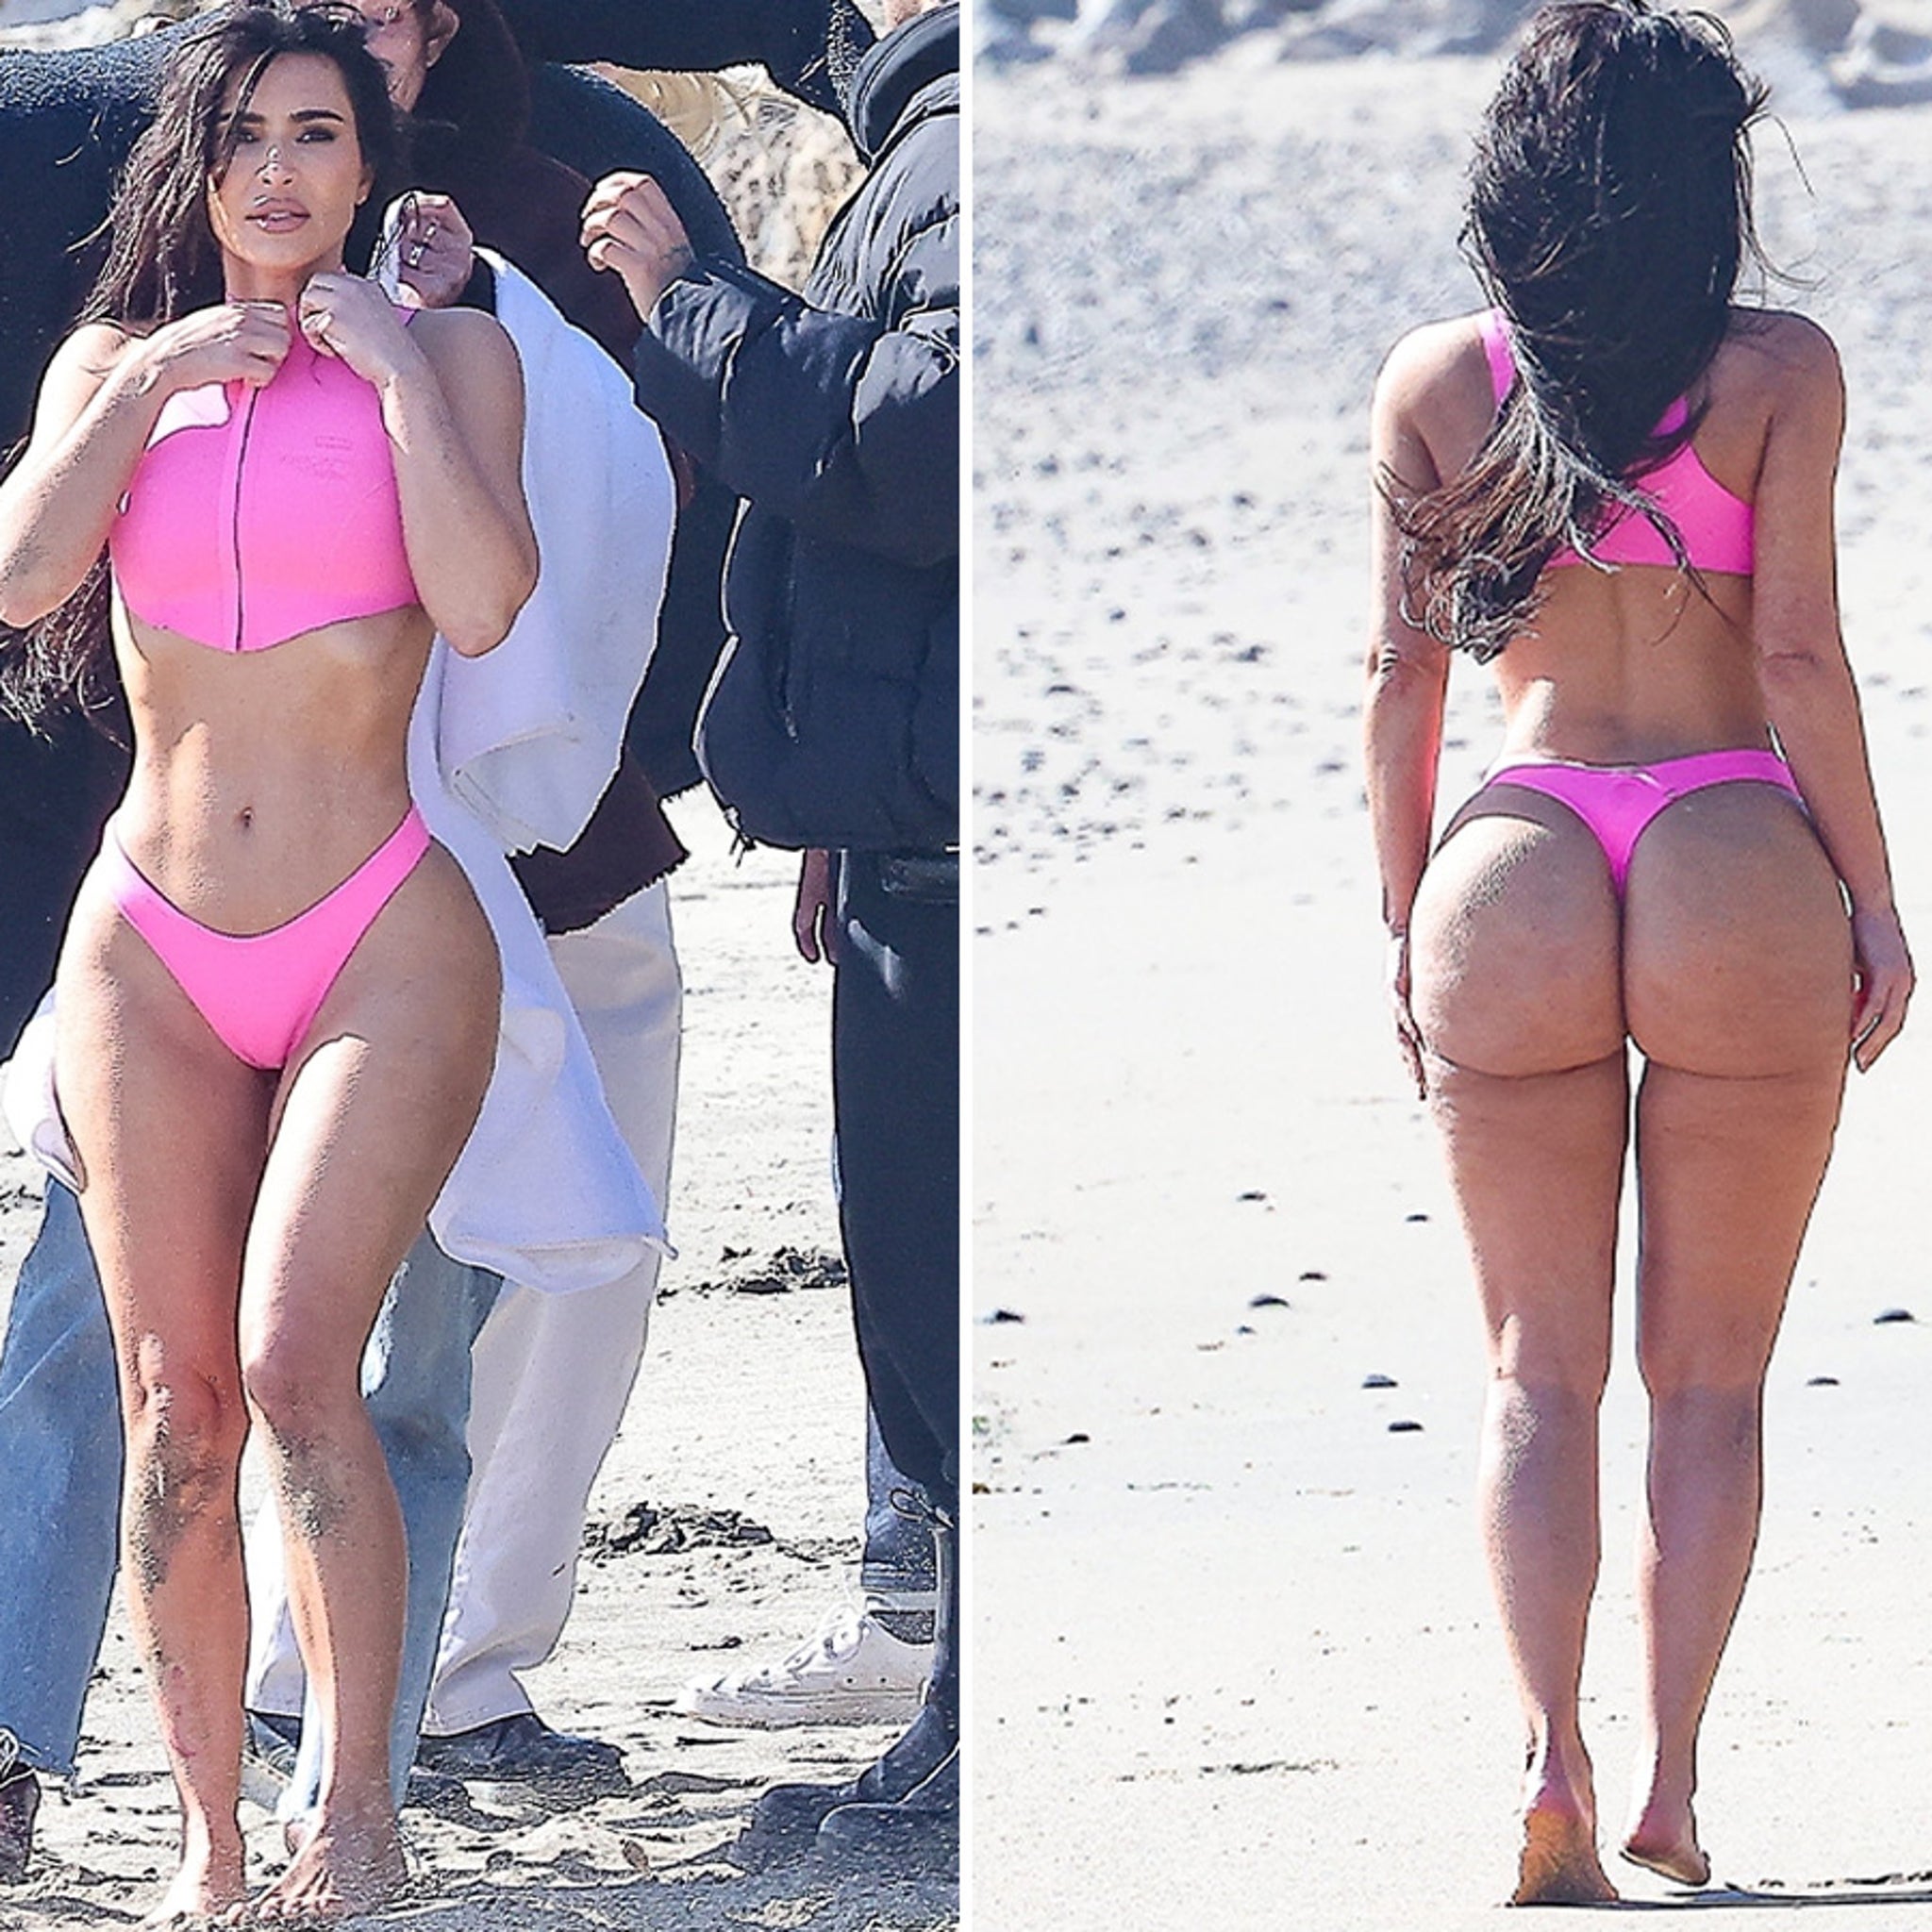 Kim Kardashian Wears Pink Bikini for Beach Photo Shoot